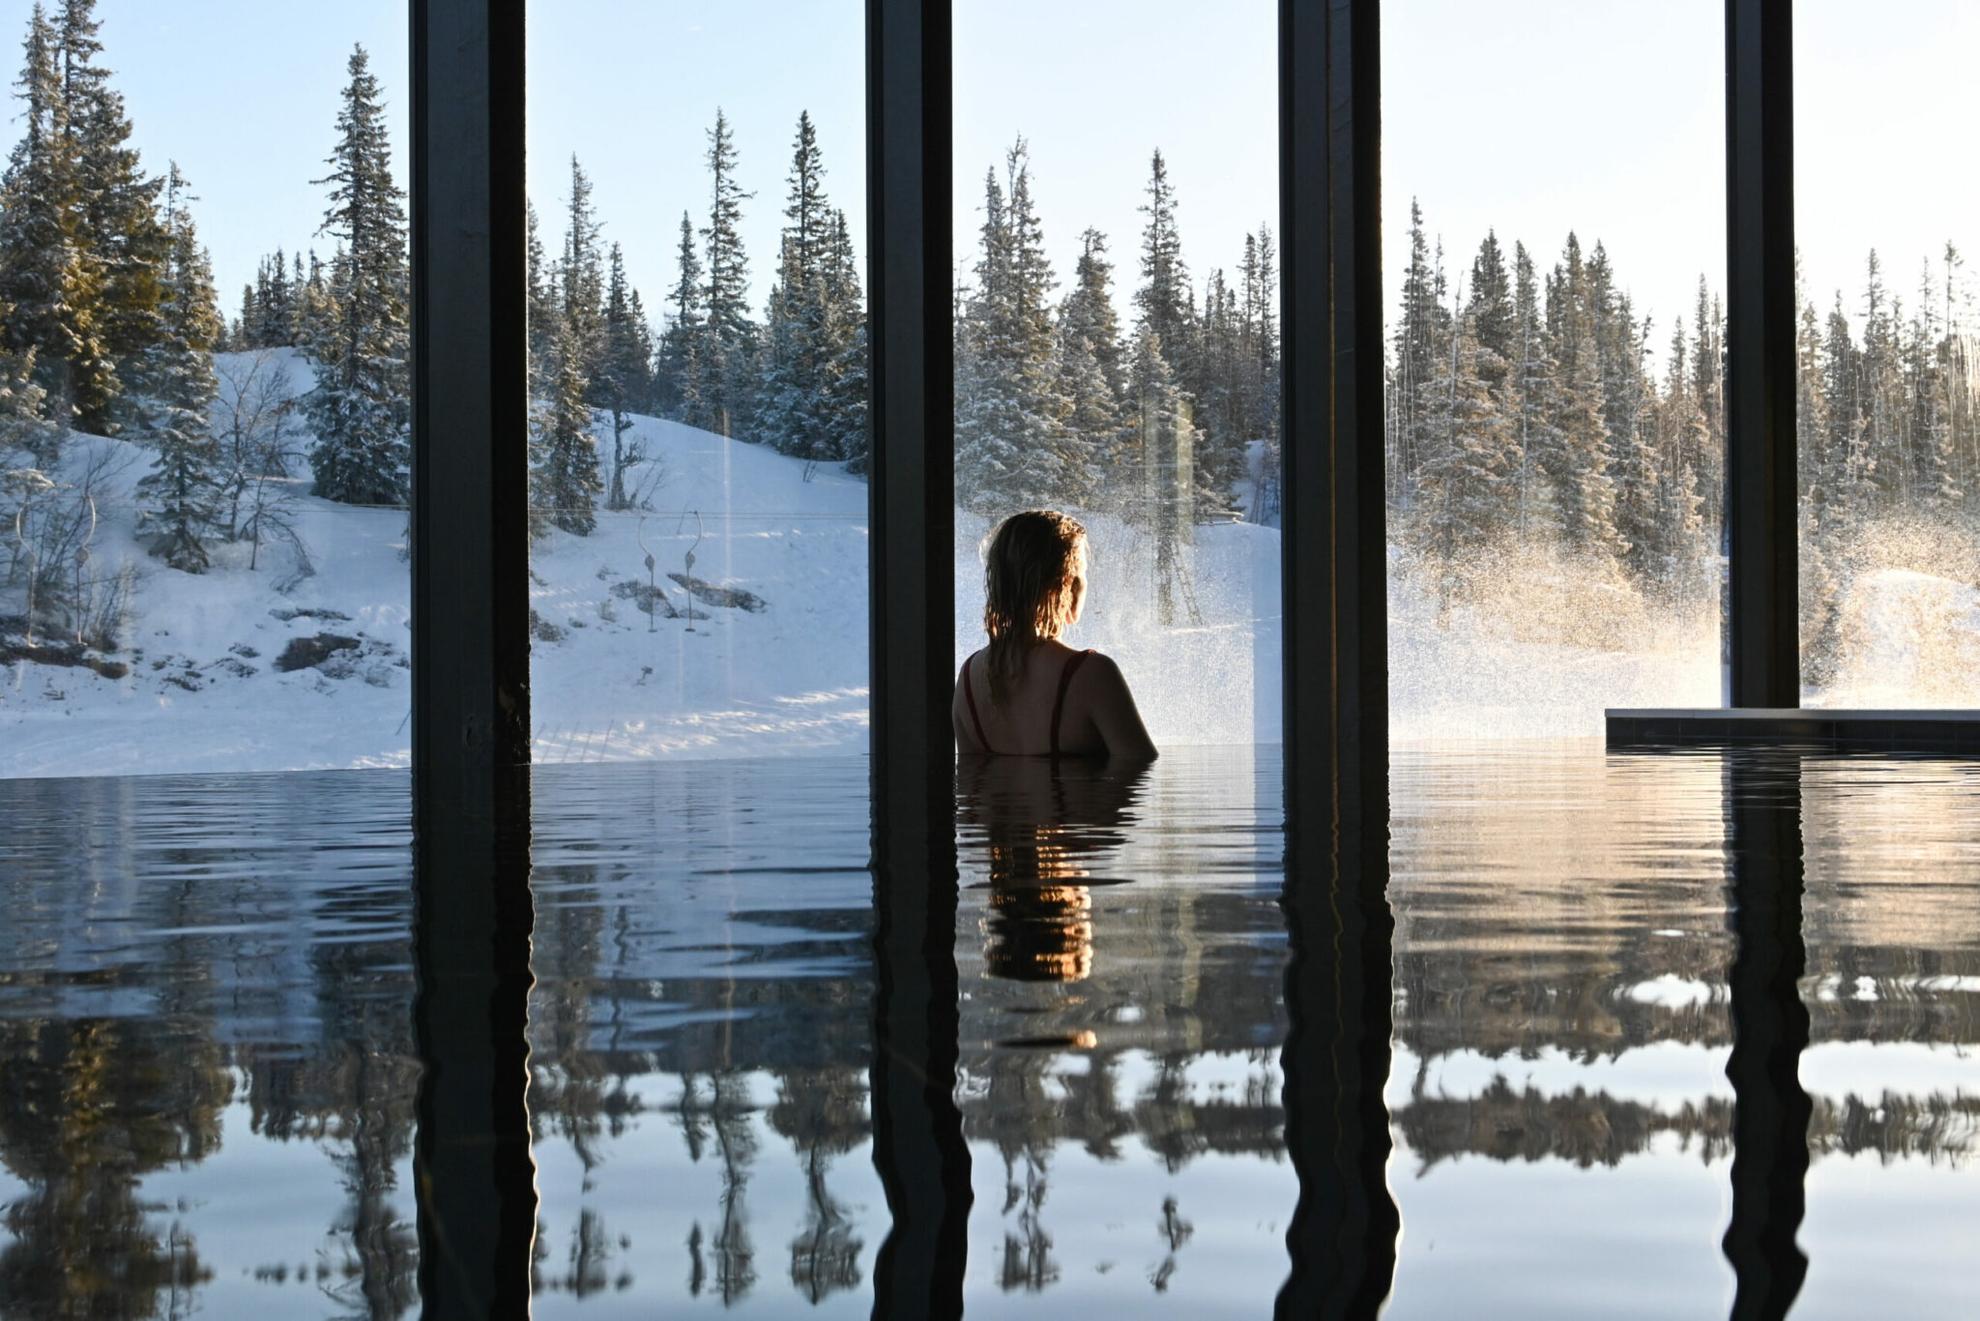 Une personne dans une piscine intérieure à débordement regardant la forêt enneigée à travers les grandes fenêtres.